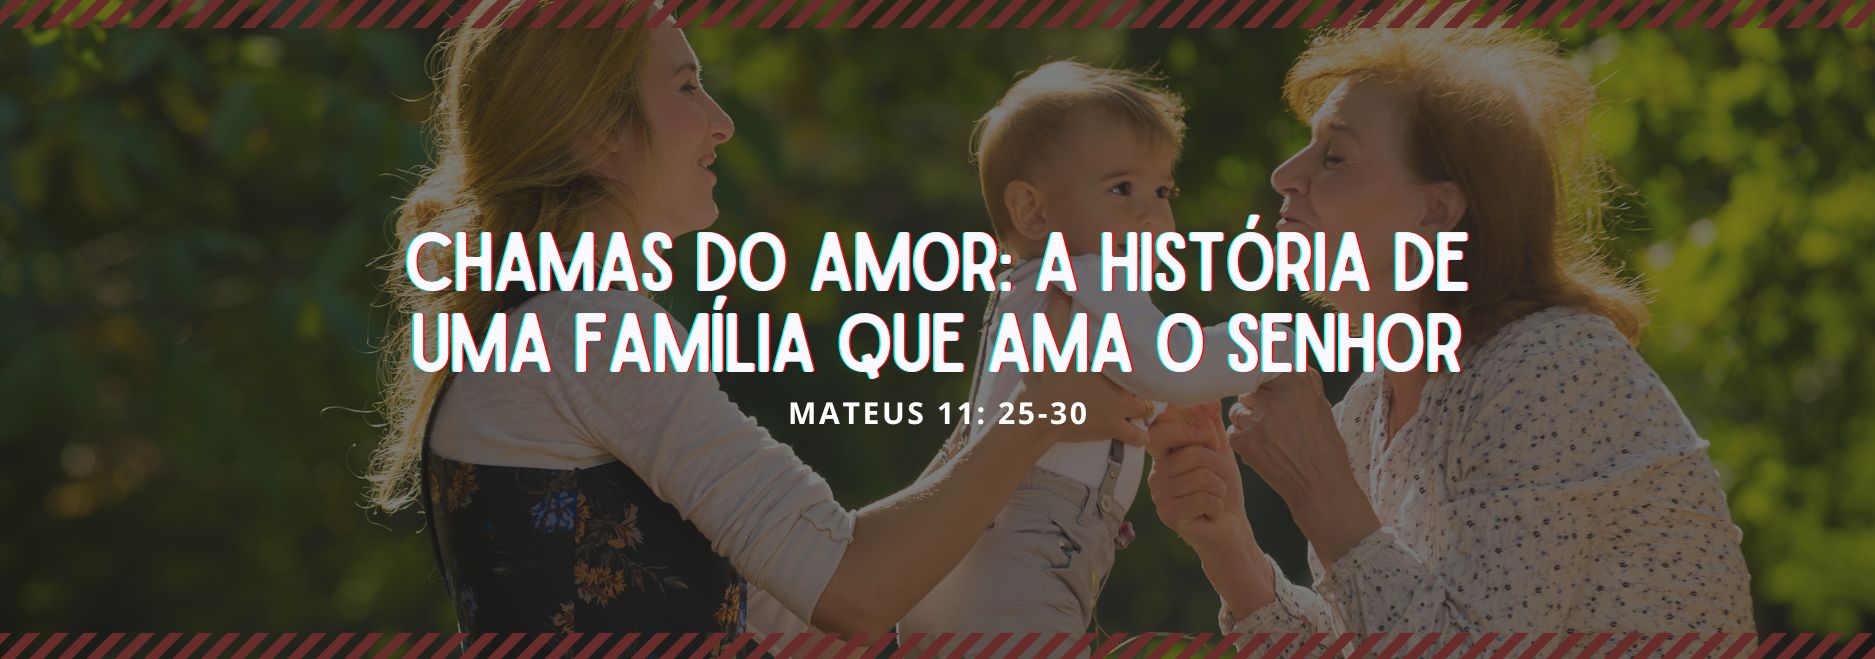 Chamas Do Amor A História De Uma Família Que Ama O Senhor